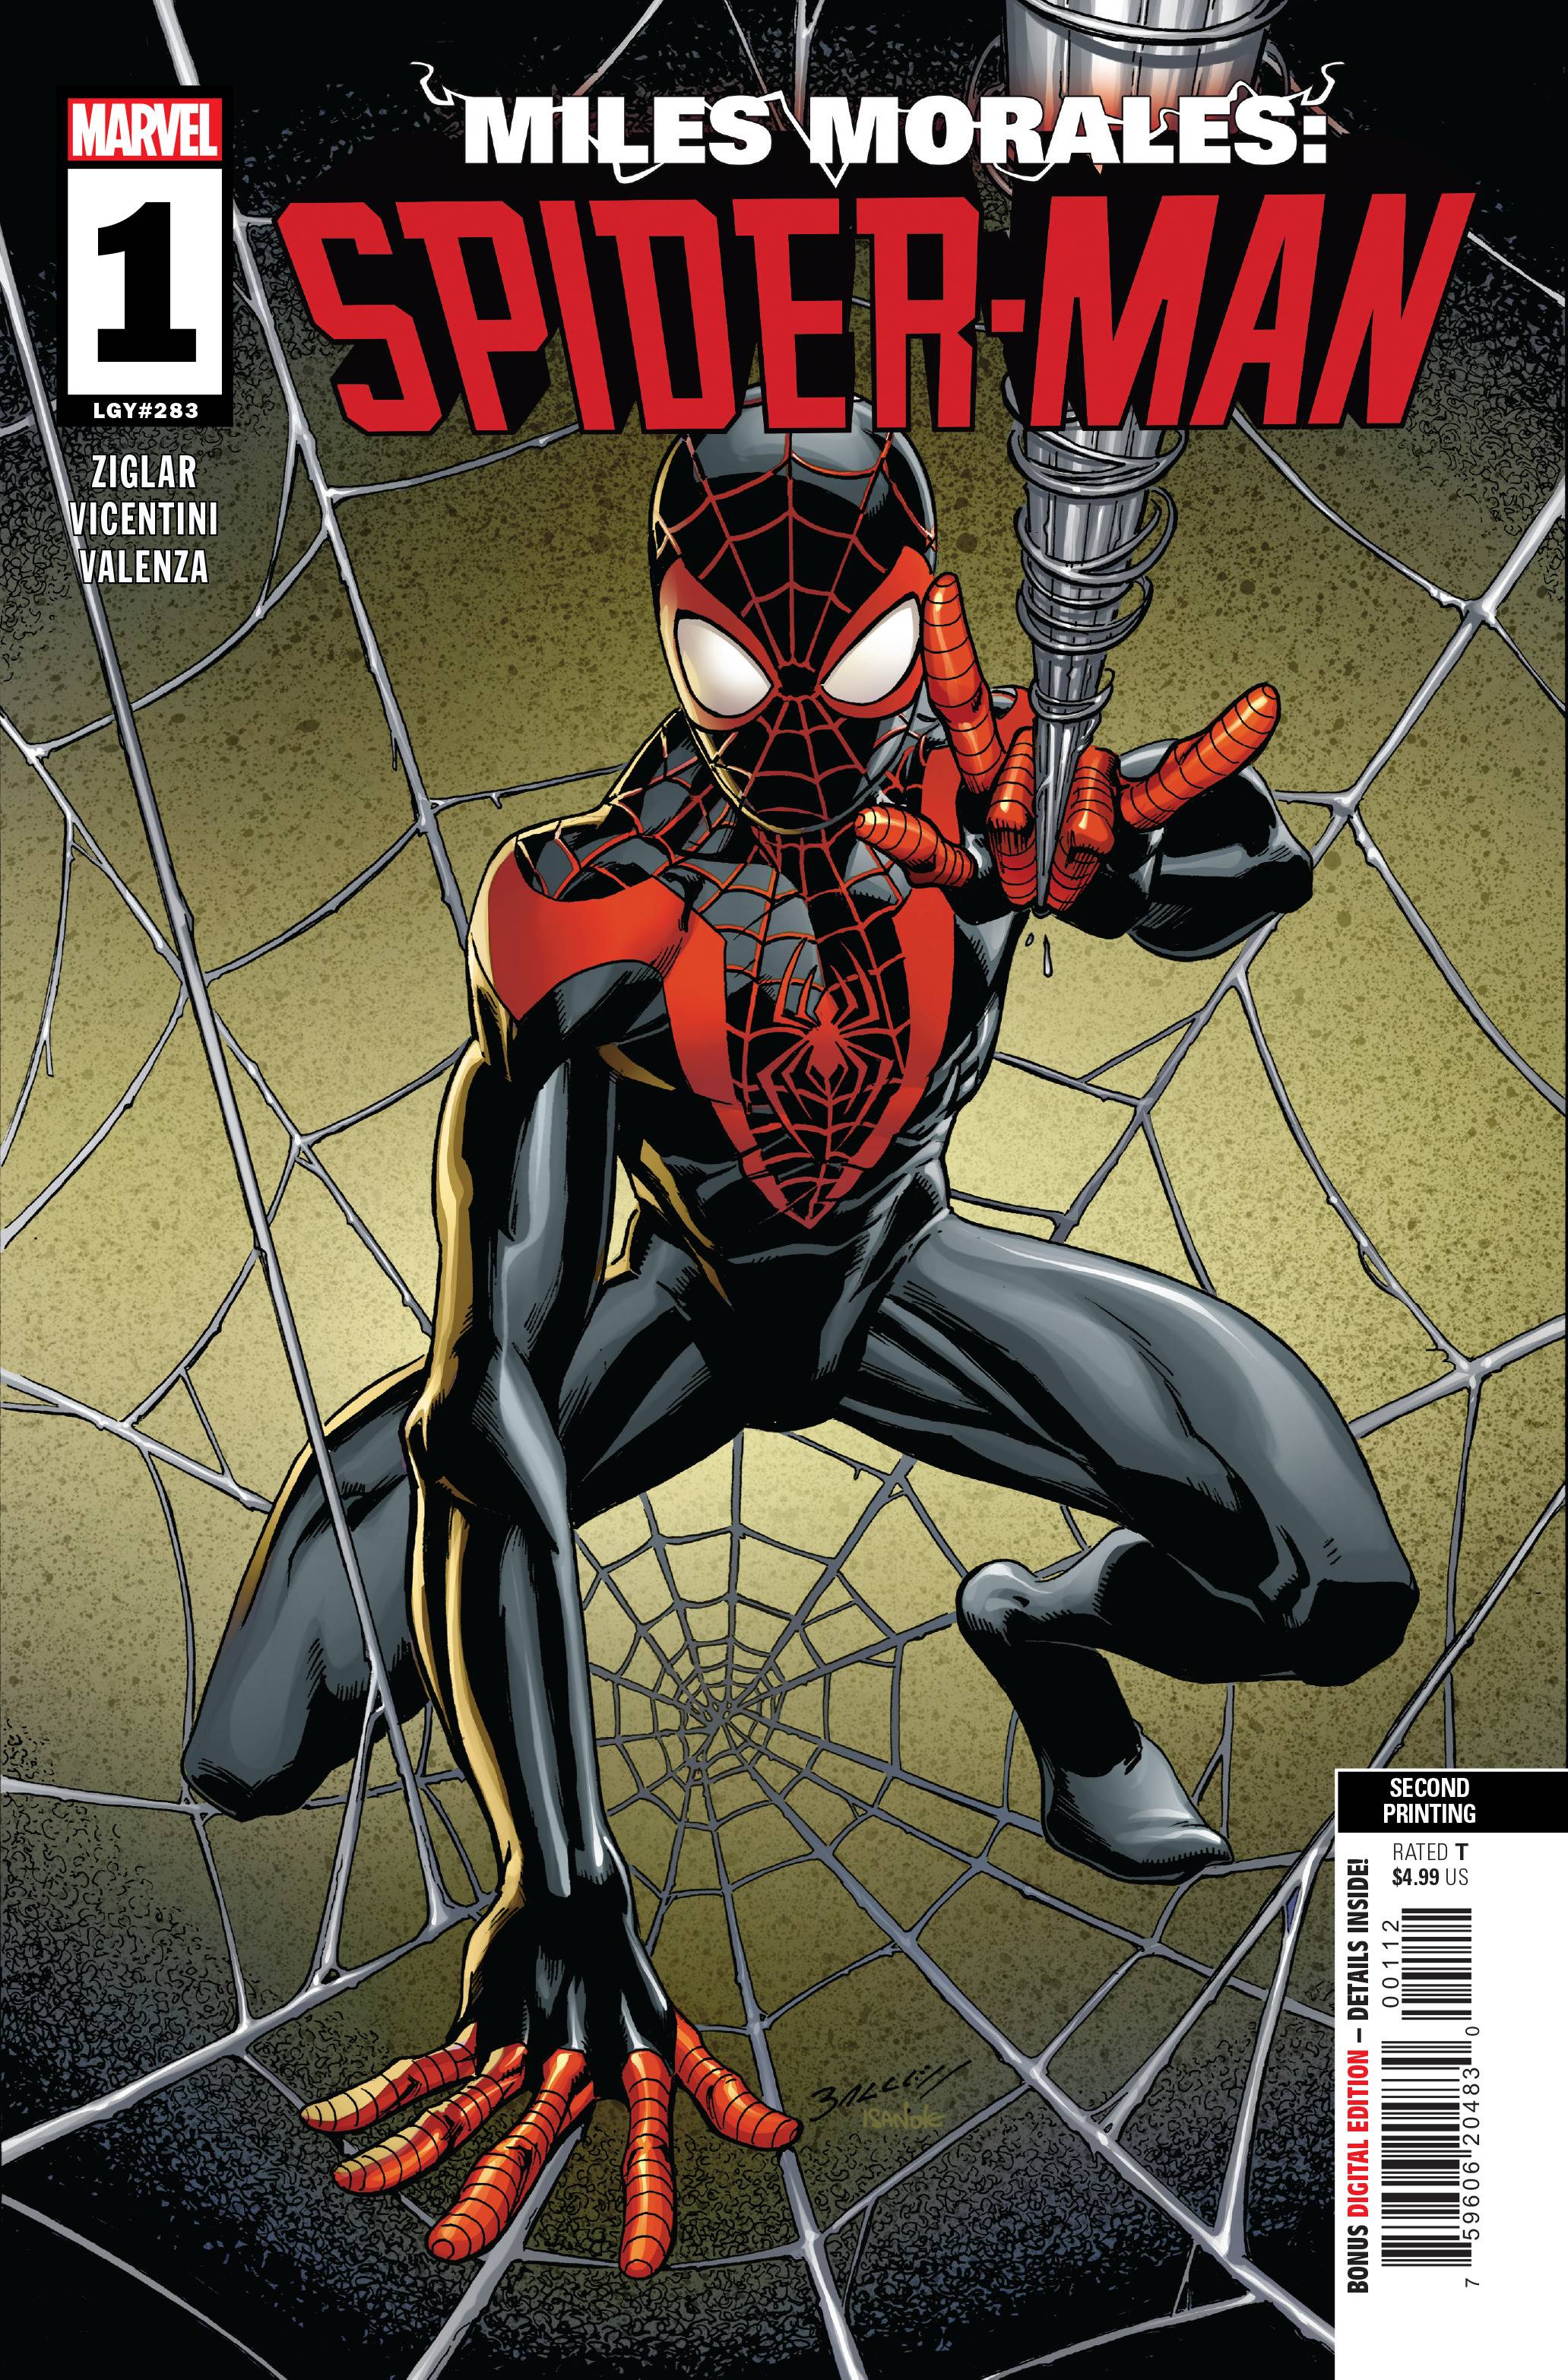 Marvel: Miles Morales: Spider-Man #1 (Bagley 2nd Printing Variant) from  Miles Morales: Spider-Man by Cody Ziglar published by Marvel Comics @   - UK and Worldwide Cult Entertainment Megastore